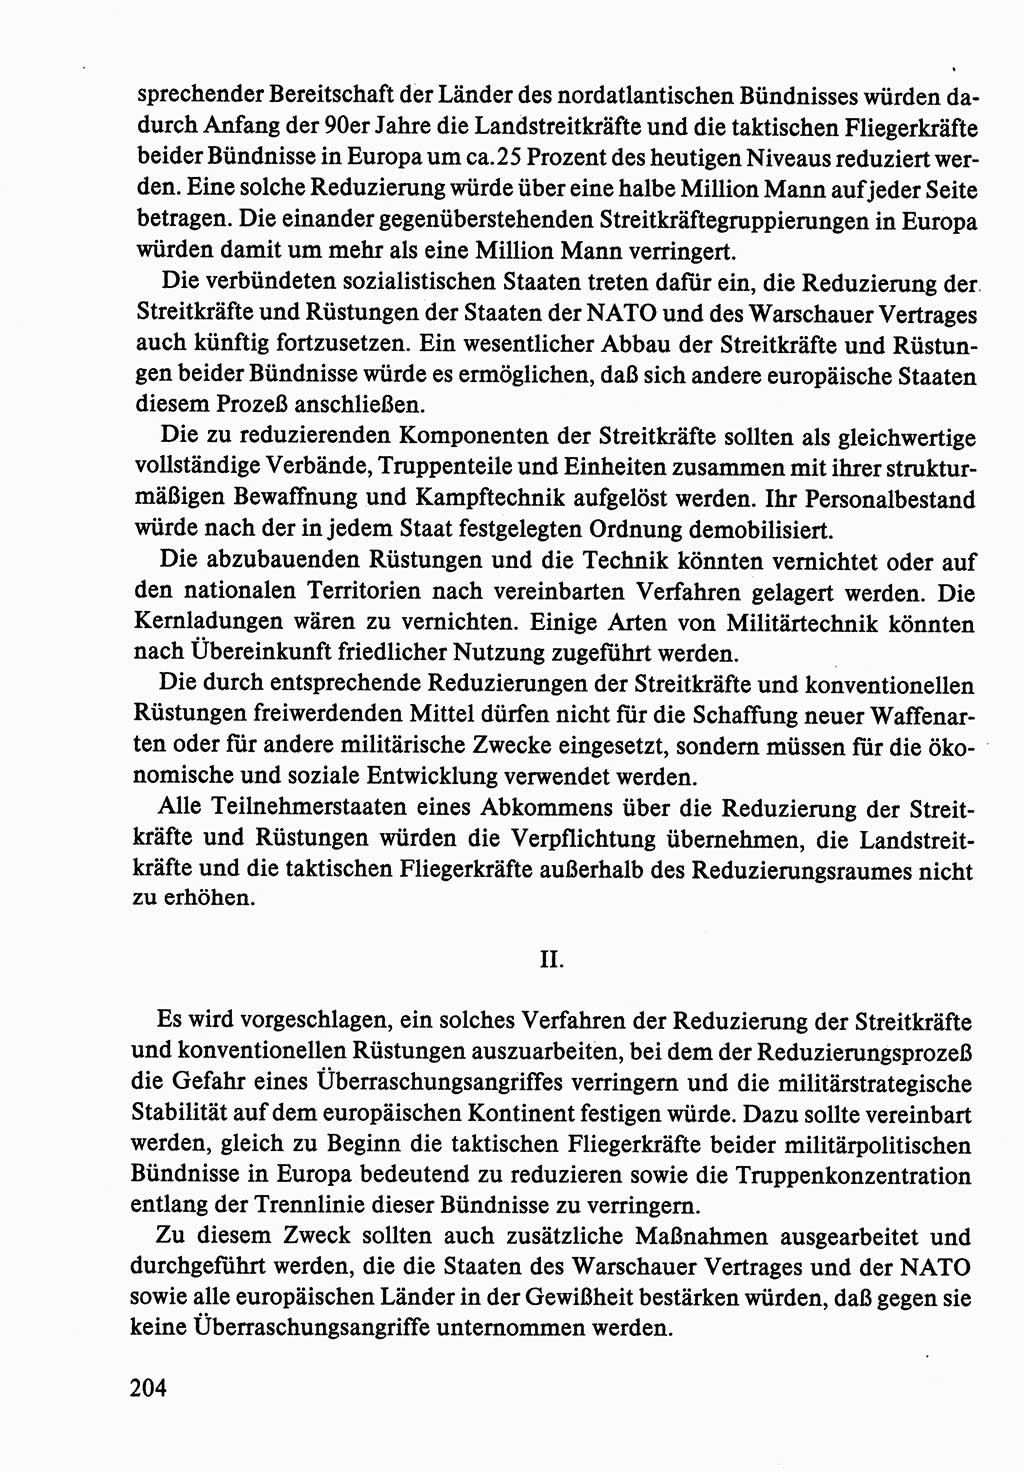 Dokumente der Sozialistischen Einheitspartei Deutschlands (SED) [Deutsche Demokratische Republik (DDR)] 1986-1987, Seite 204 (Dok. SED DDR 1986-1987, S. 204)